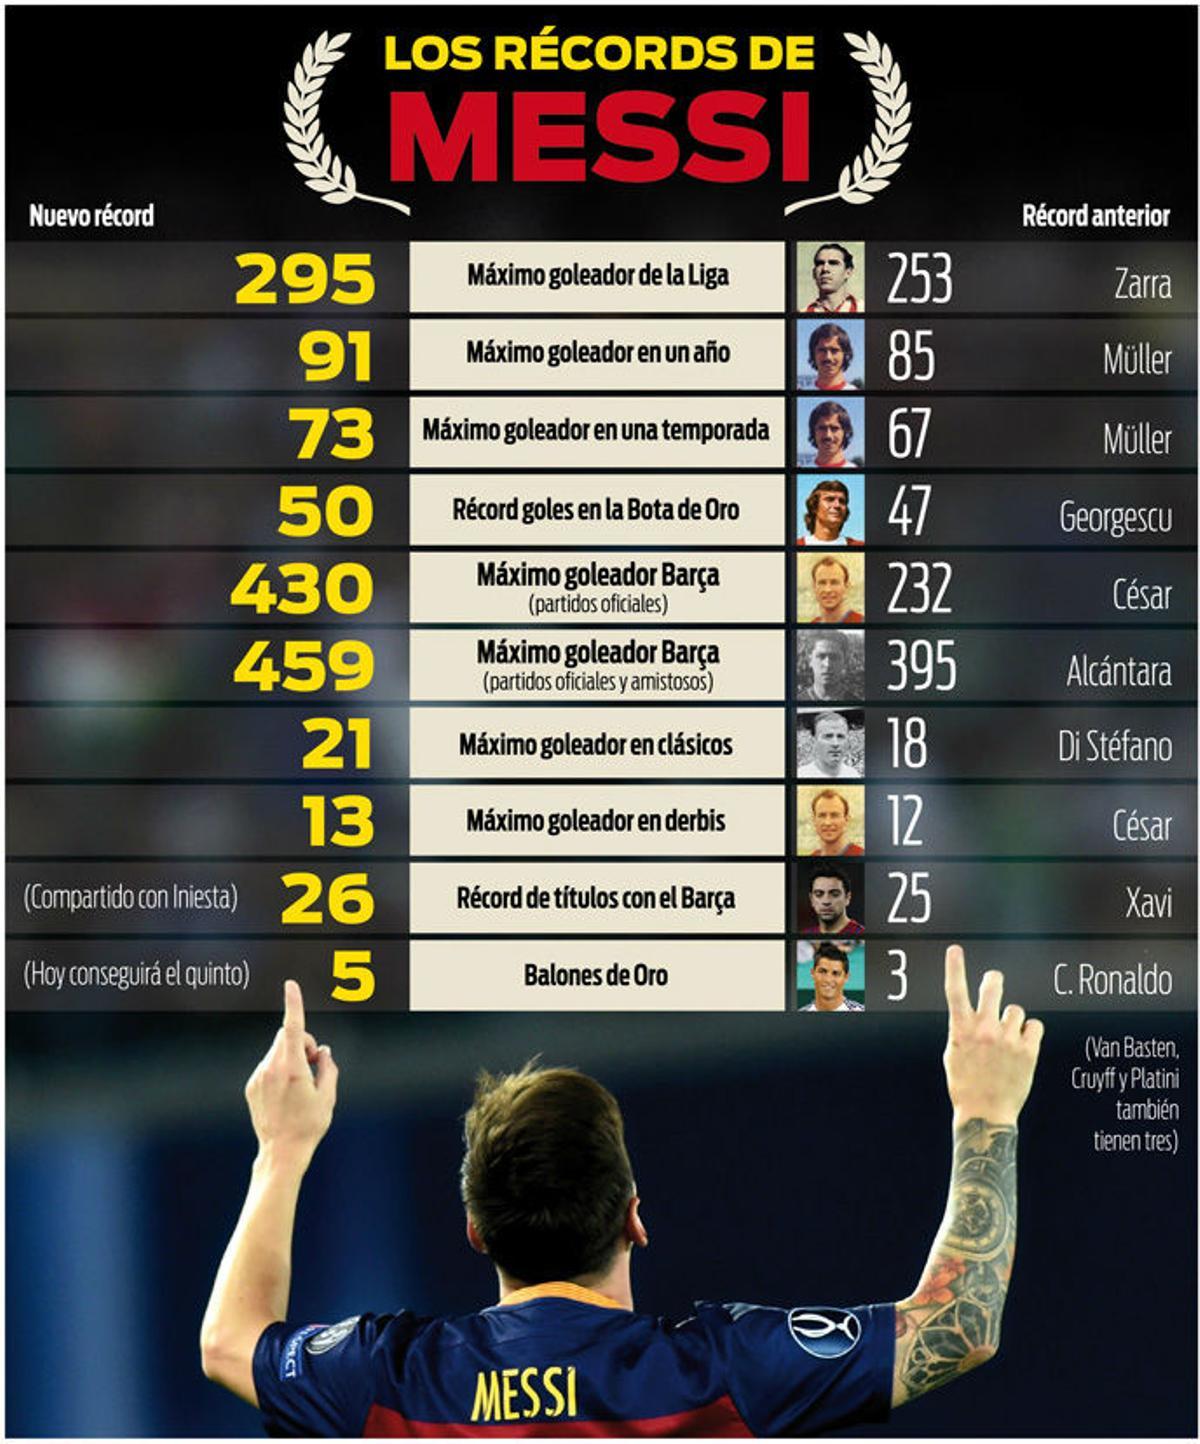 ¿Cuál fue el récord que rompio Messi